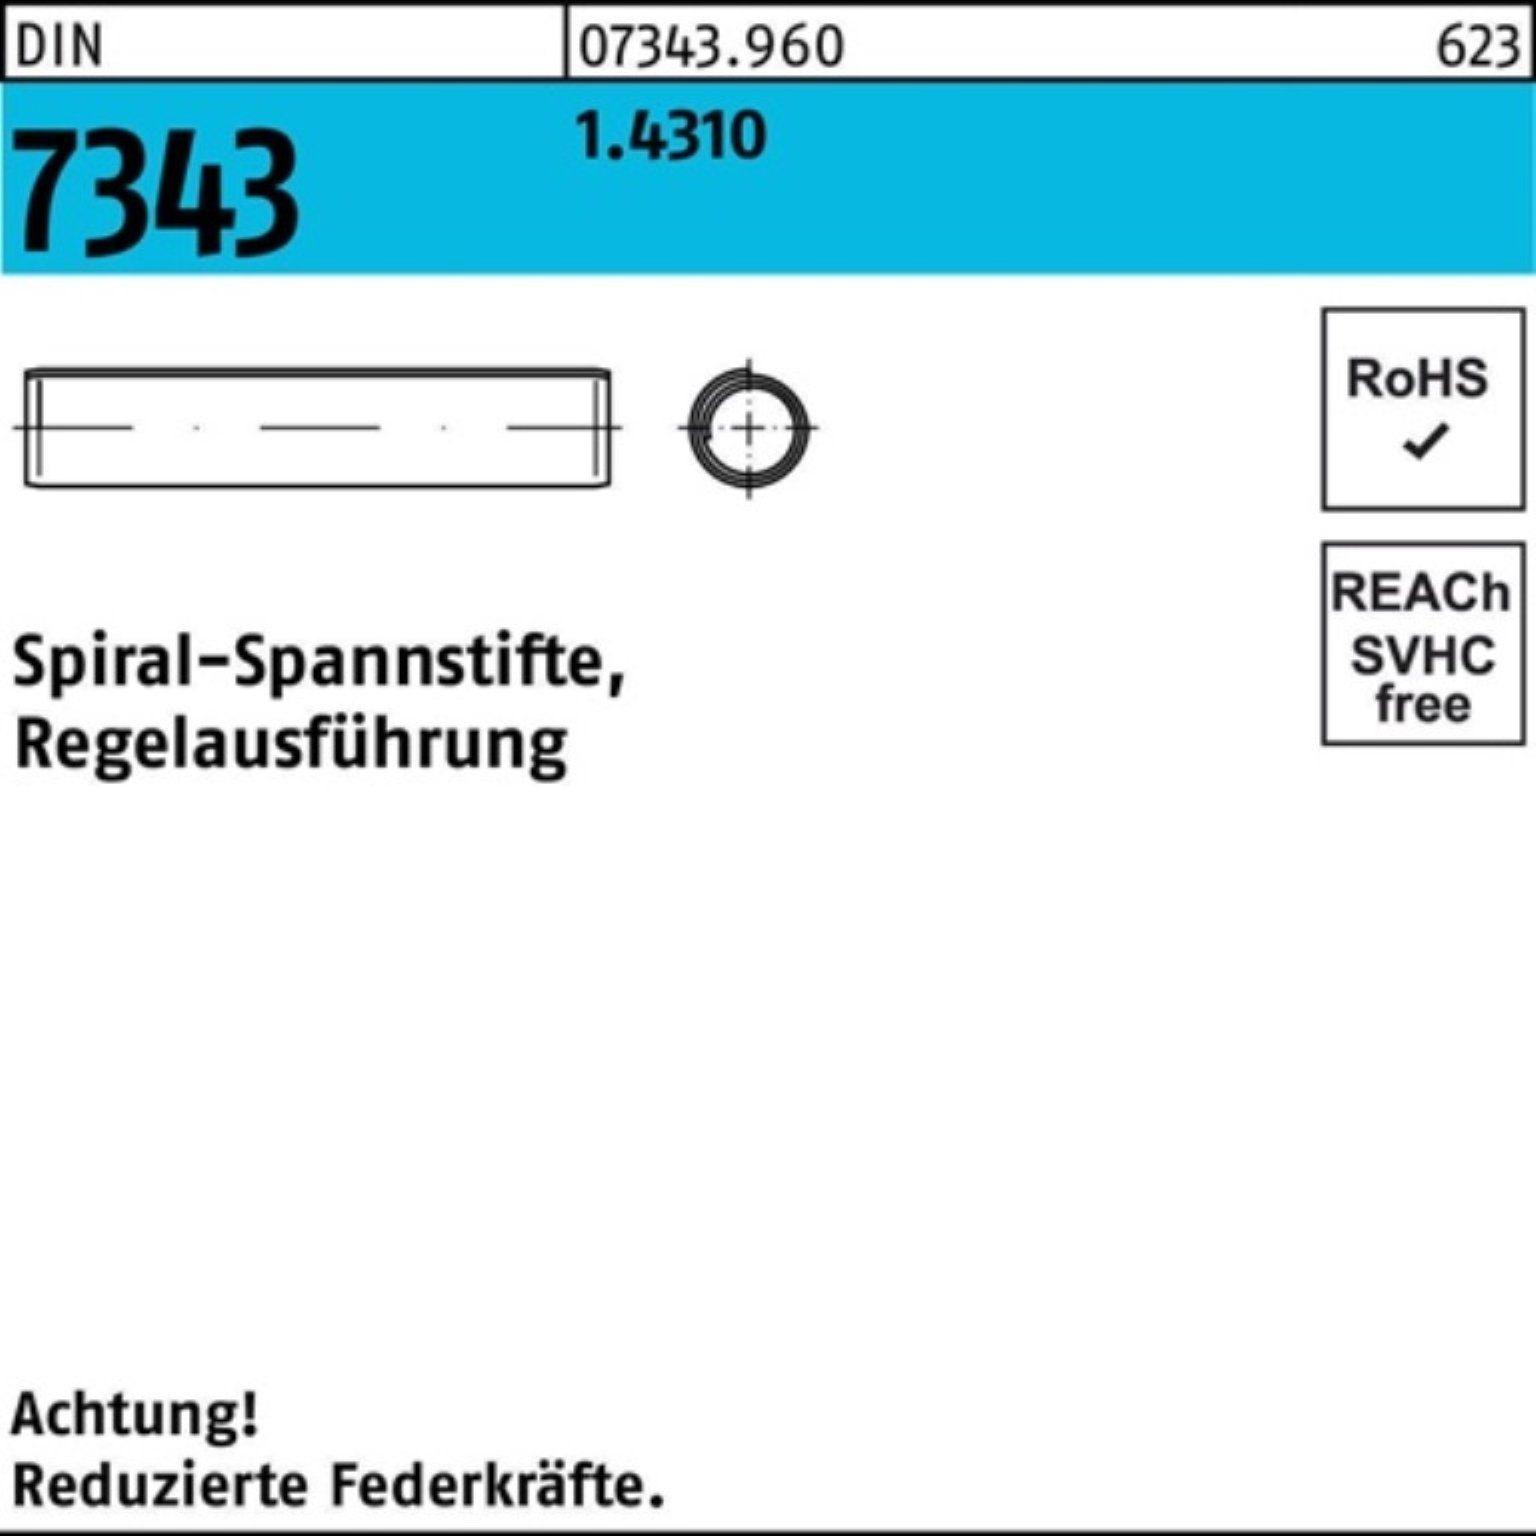 8750 16 Spannstift Reyher DIN Pack Spiralspannstift 7343/ISO 500er 1.4310 5x Regelausf.